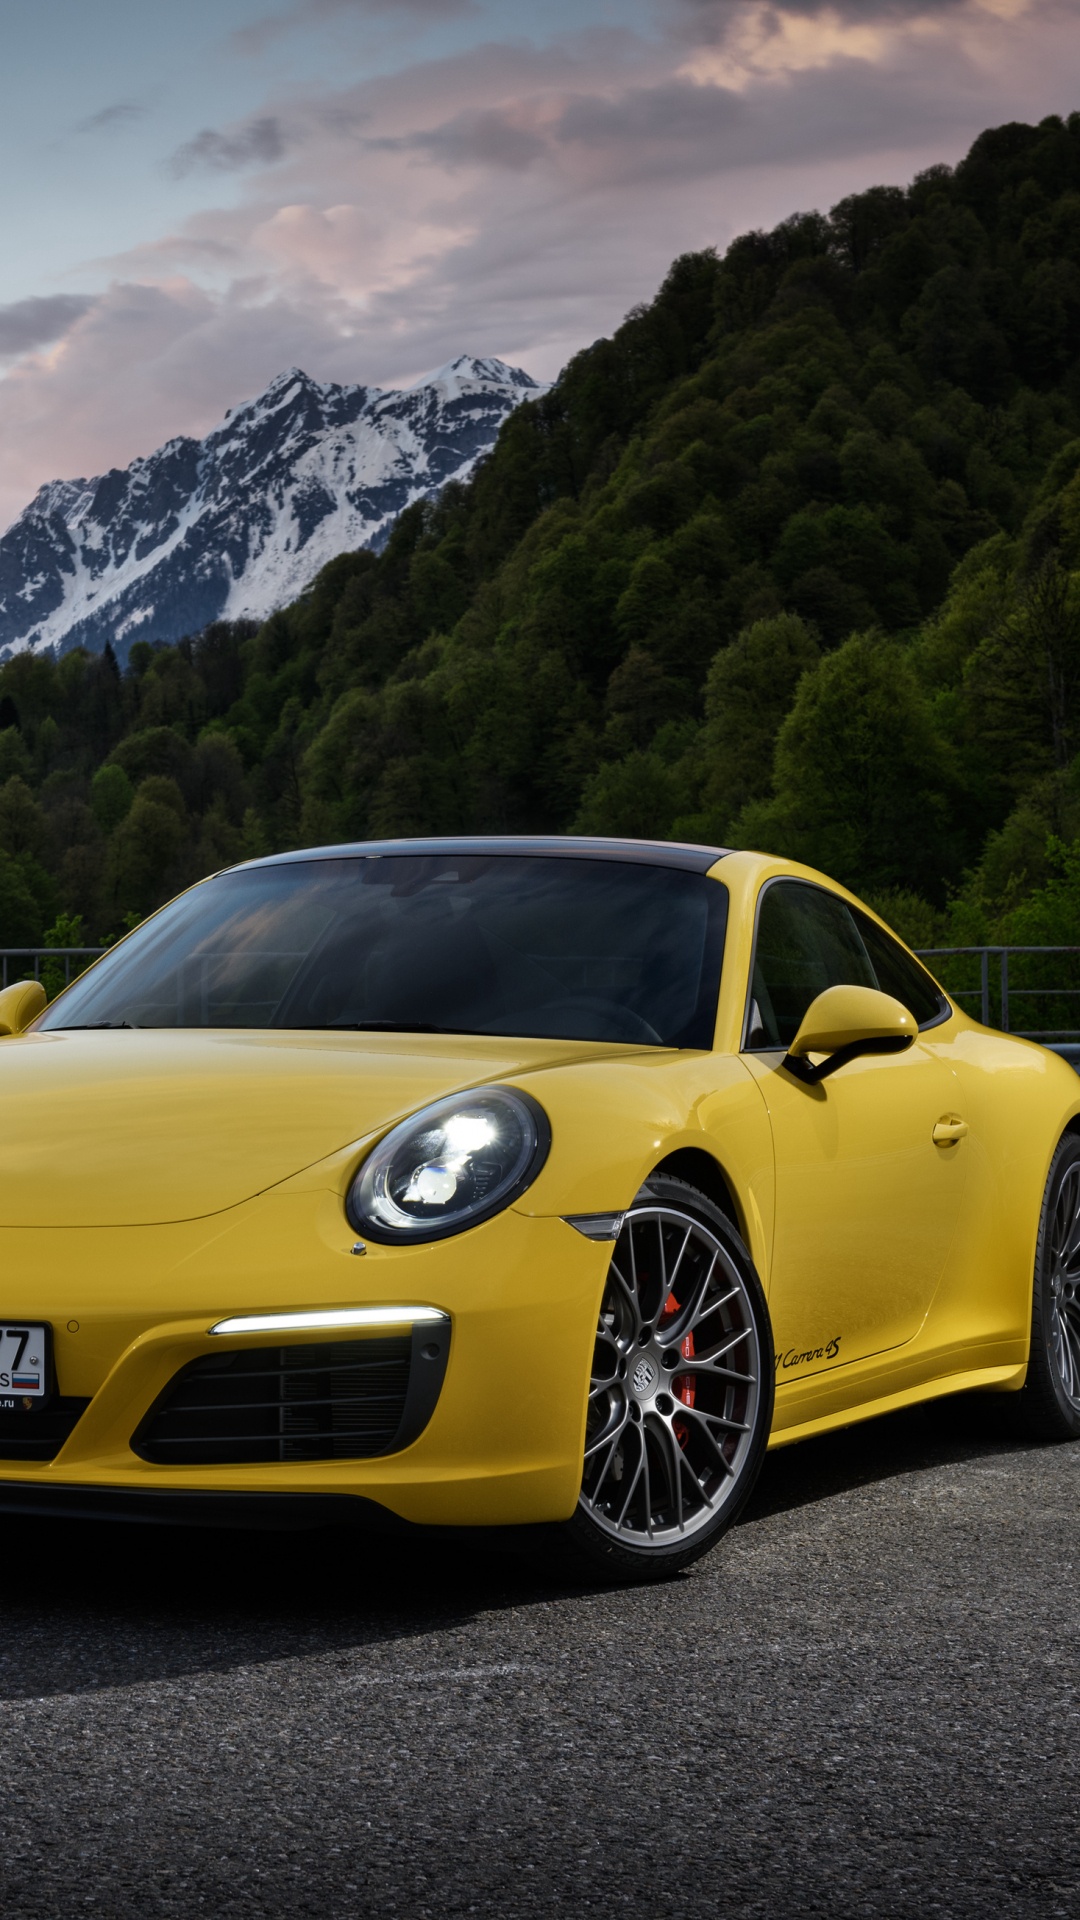 Porsche 911 Amarillo en la Carretera Cerca de la Montaña Durante el Día. Wallpaper in 1080x1920 Resolution